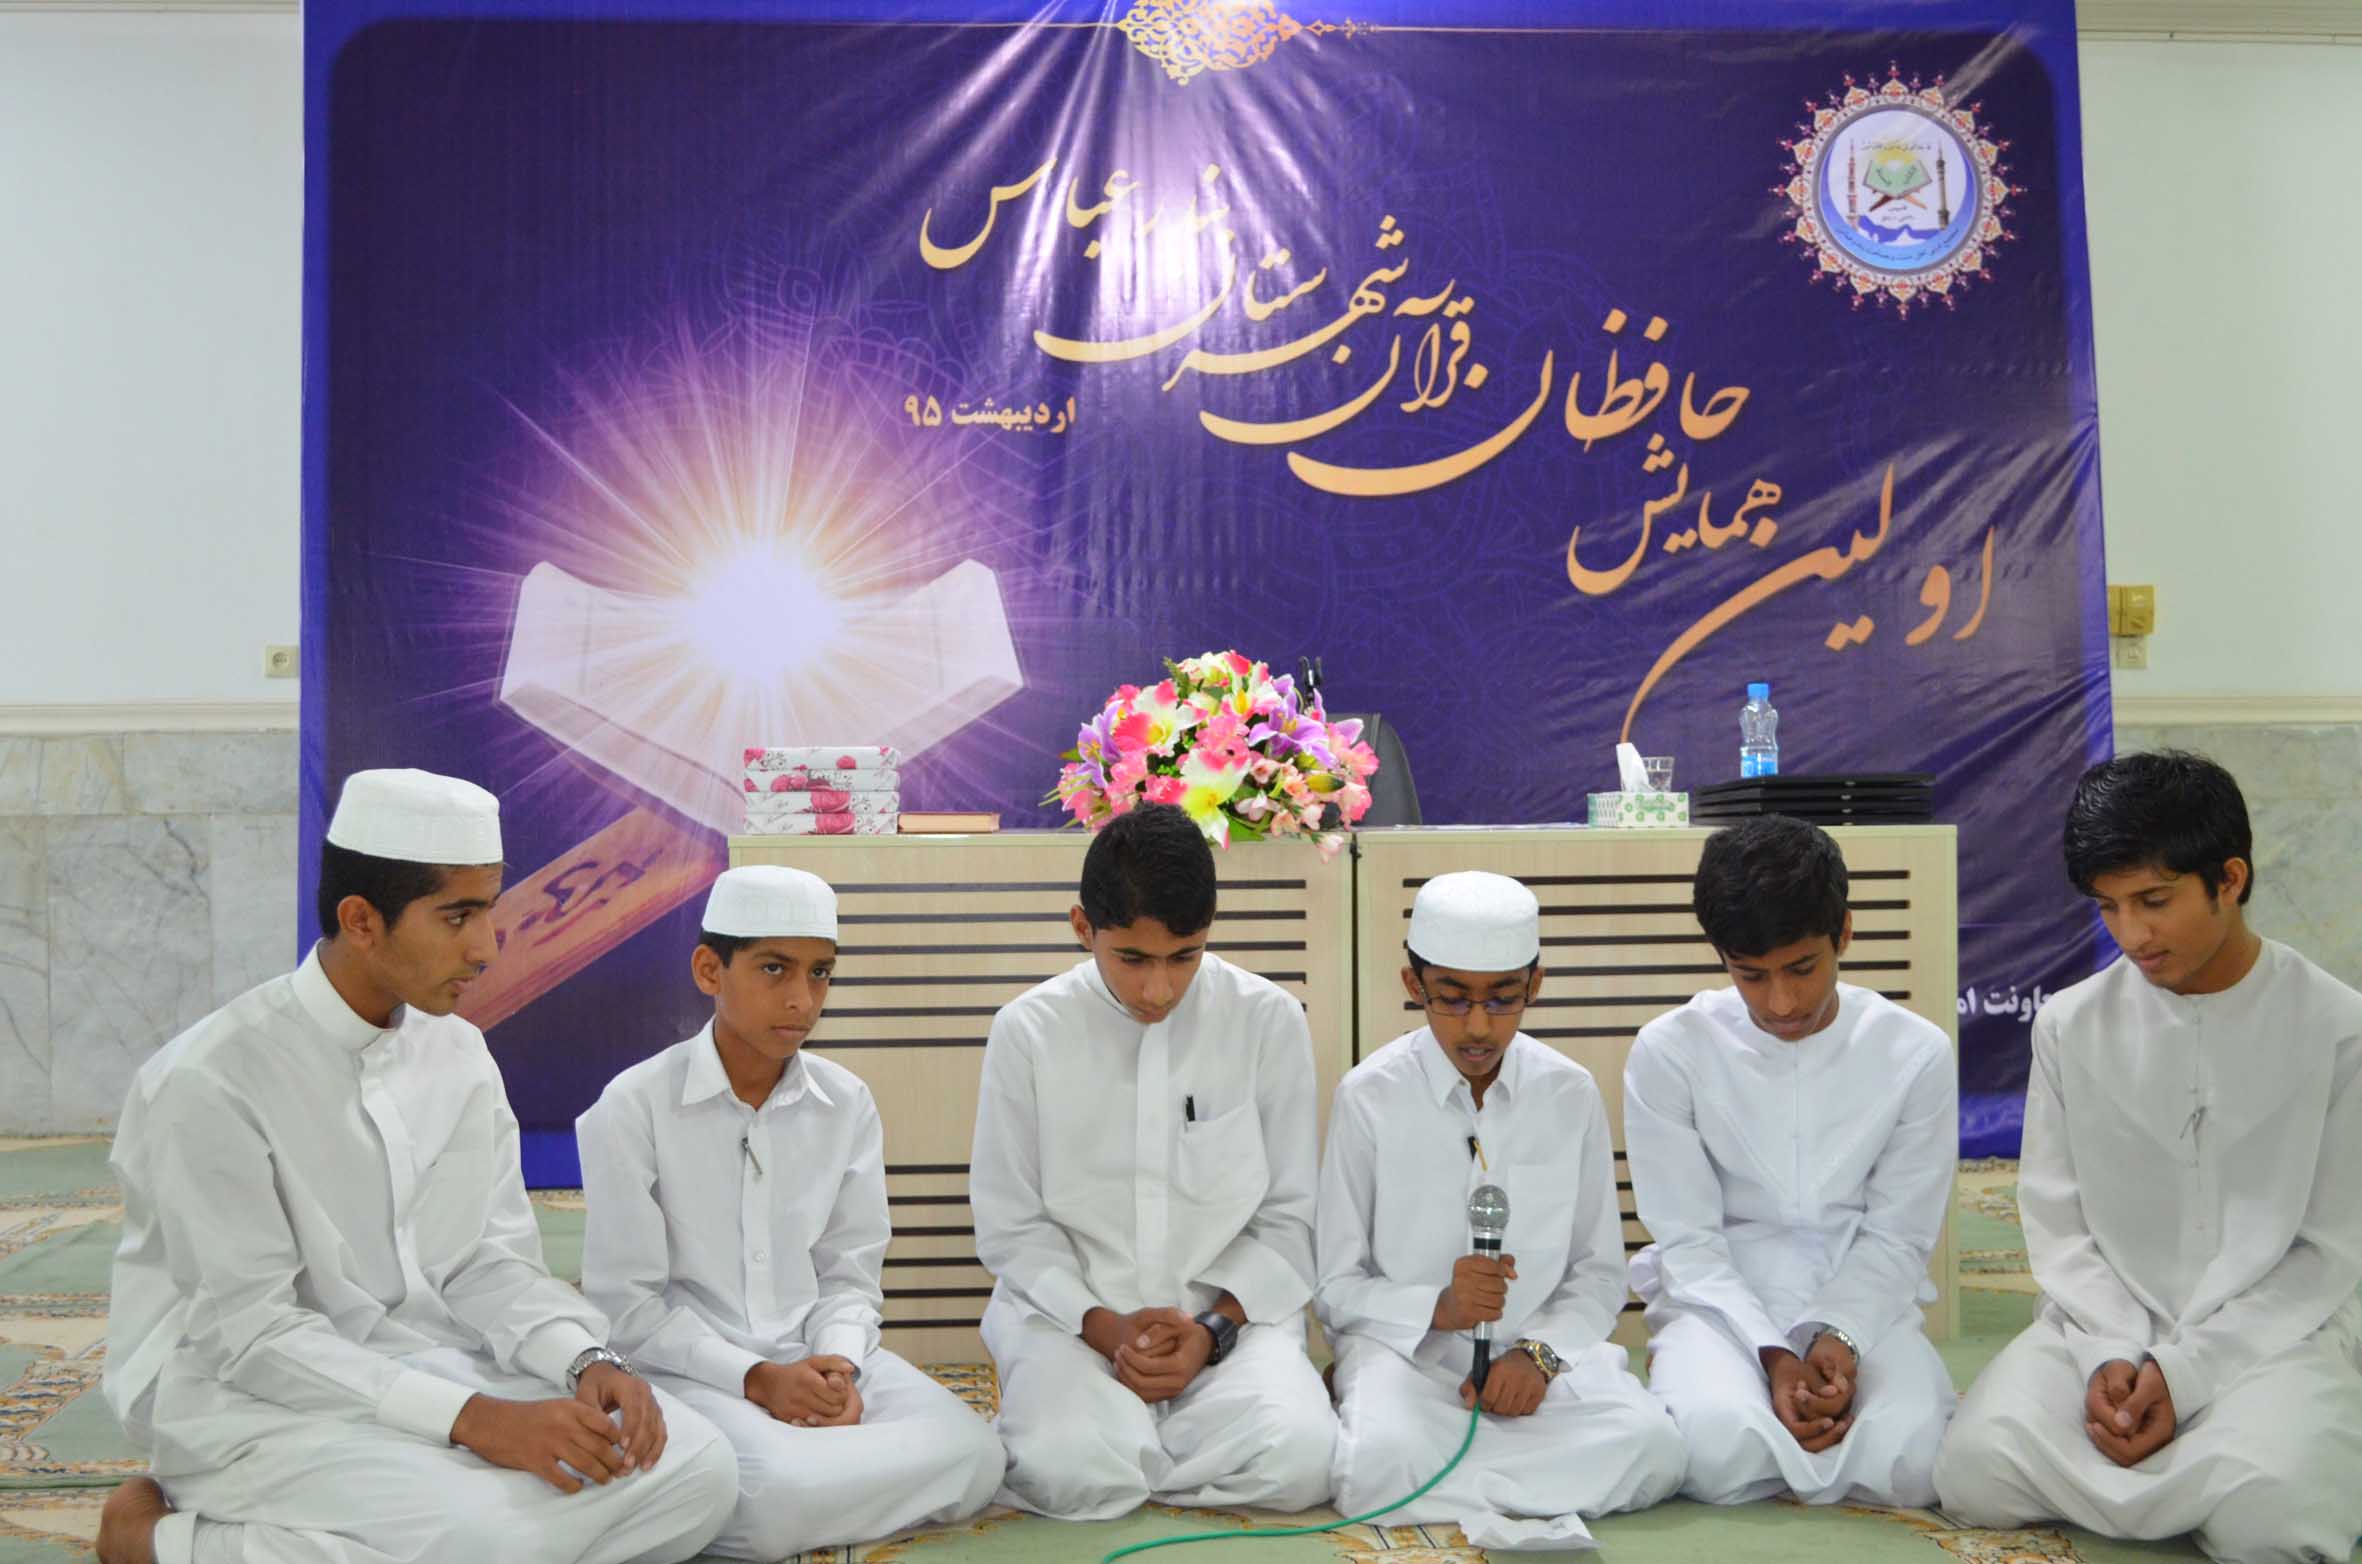 اولین همایش حافظان قرآن شهرستان بندرعباس - گروه سرود کلاس حفظ کشار چمردان